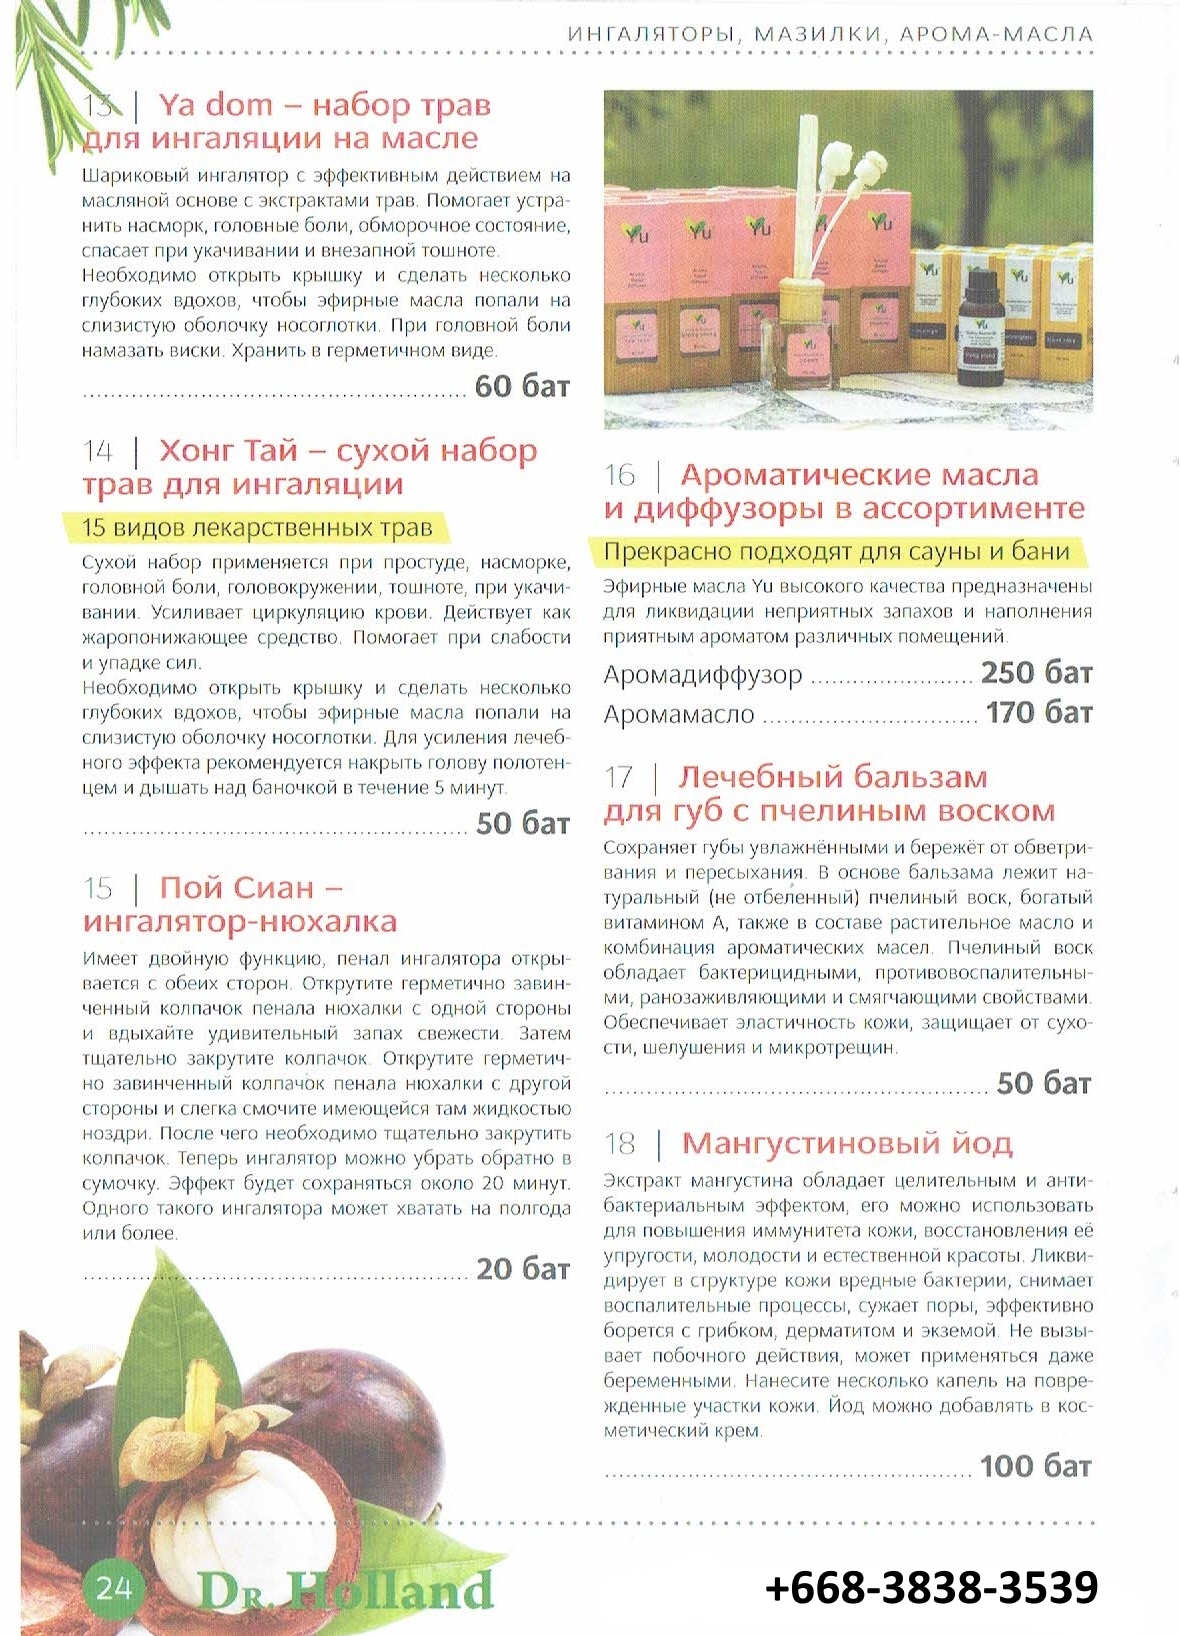 Doctor Holland аптека тайской медицины в Паттайе Таиланде каталог страница 24